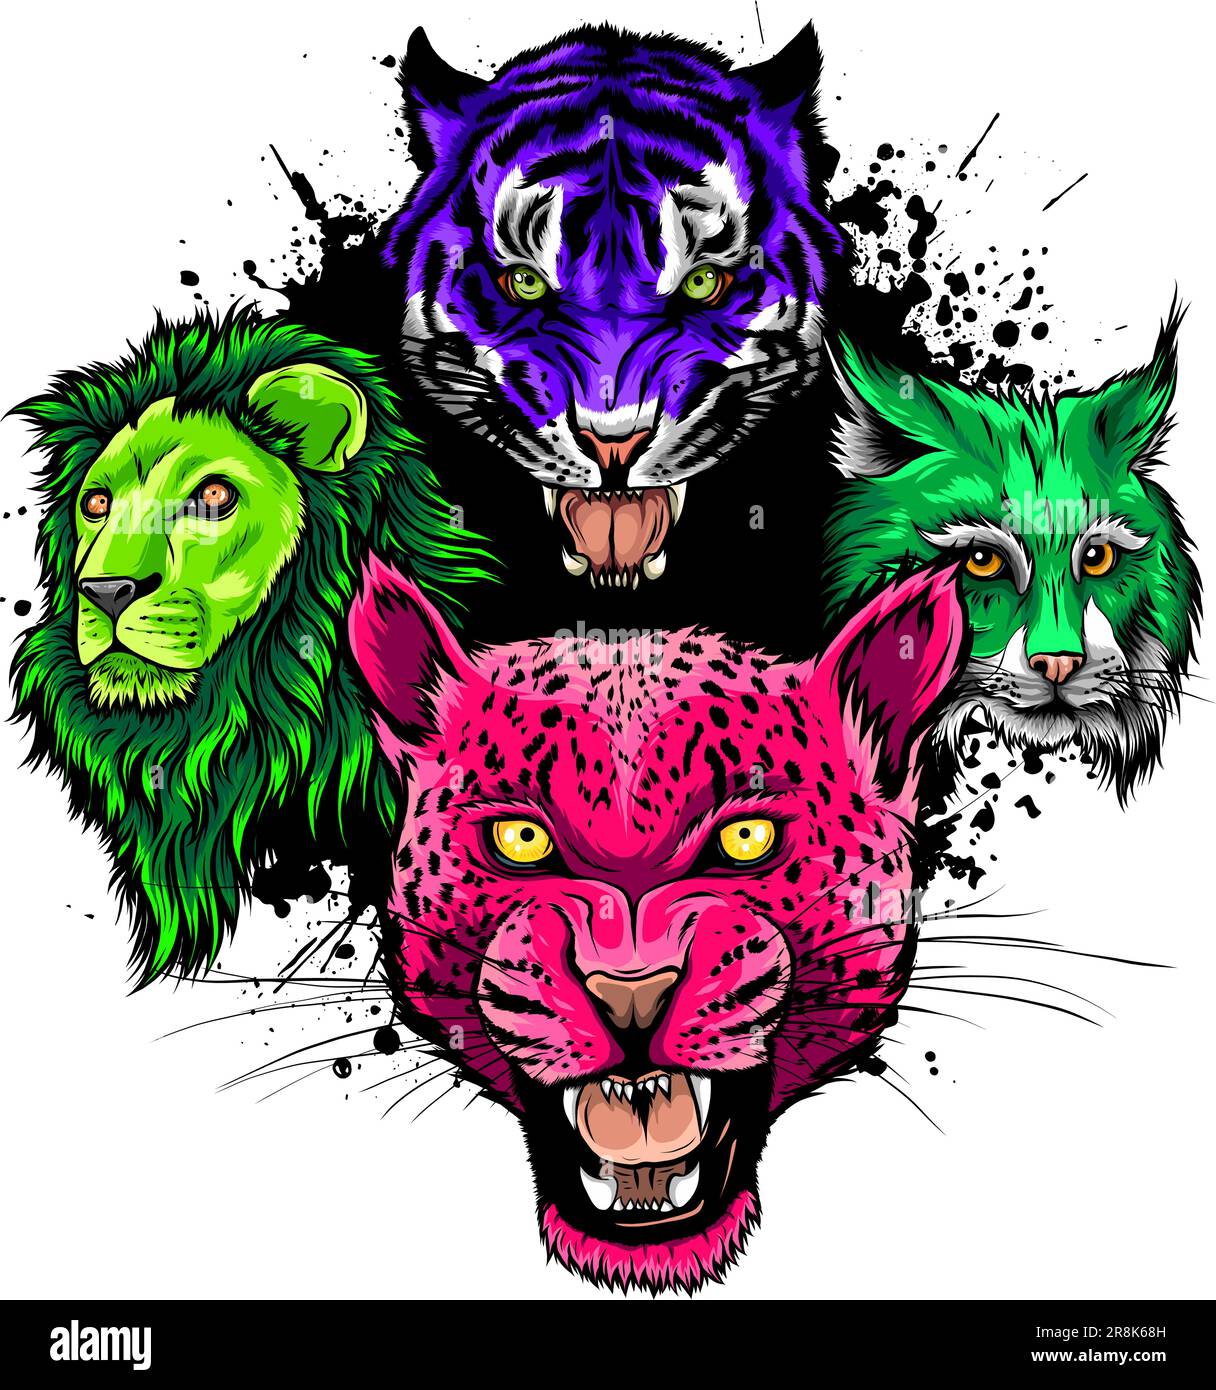 Cartoon big cats vector set. Illustration of cougar, jaguar, leopard, lion, tiger, cheetah, snow leopard. Stock Vector